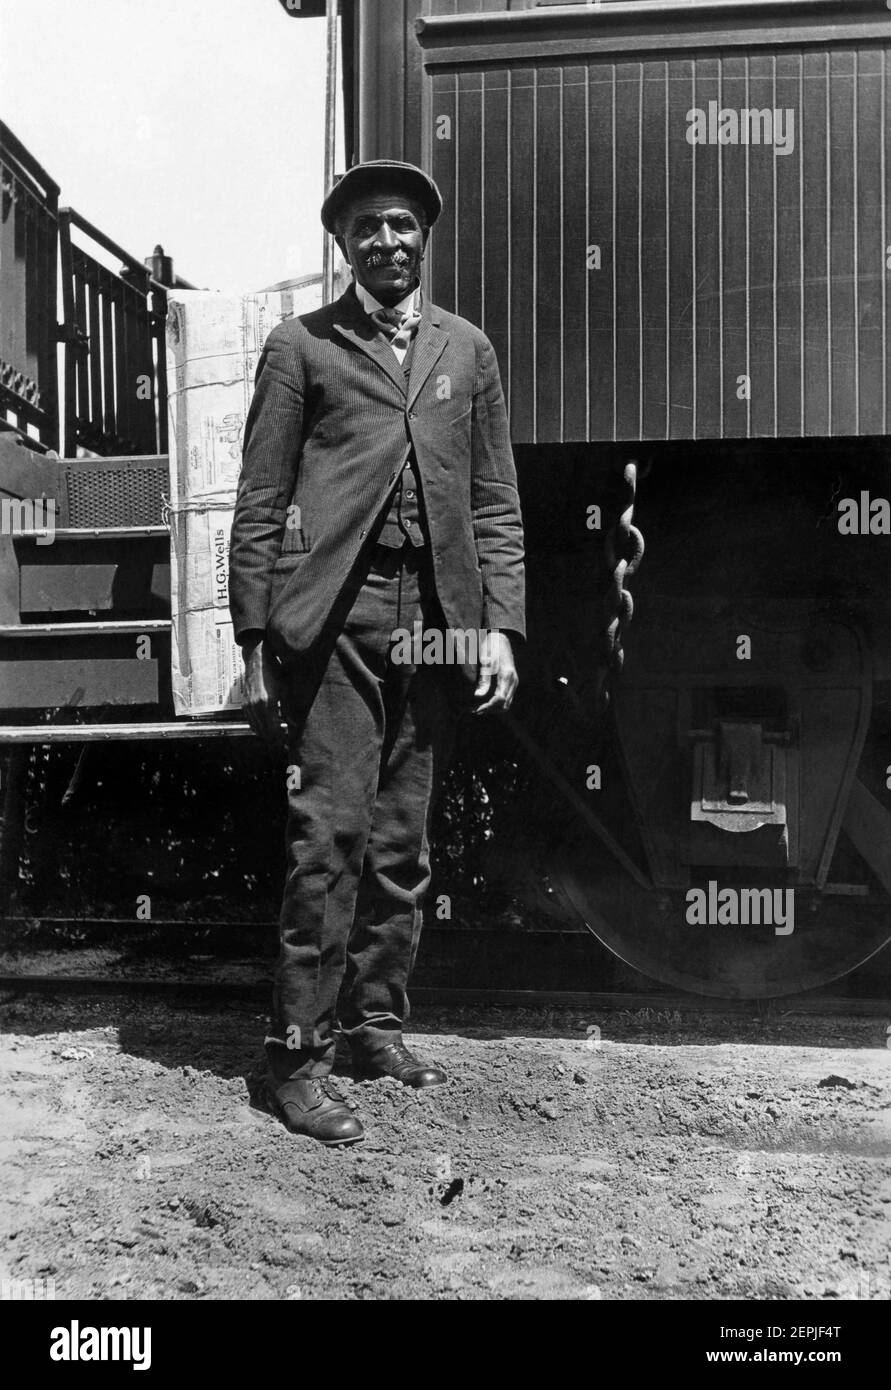 George Washington Carver (c1864–1943) stand im Juli 1926 neben einem Zug in Tuskegee, Alabama. Carver, der prominenteste schwarze Wissenschaftler des frühen 20th. Jahrhunderts, war Professor am Tuskegee Institute (heute Tuskegee University). (USA) Stockfoto